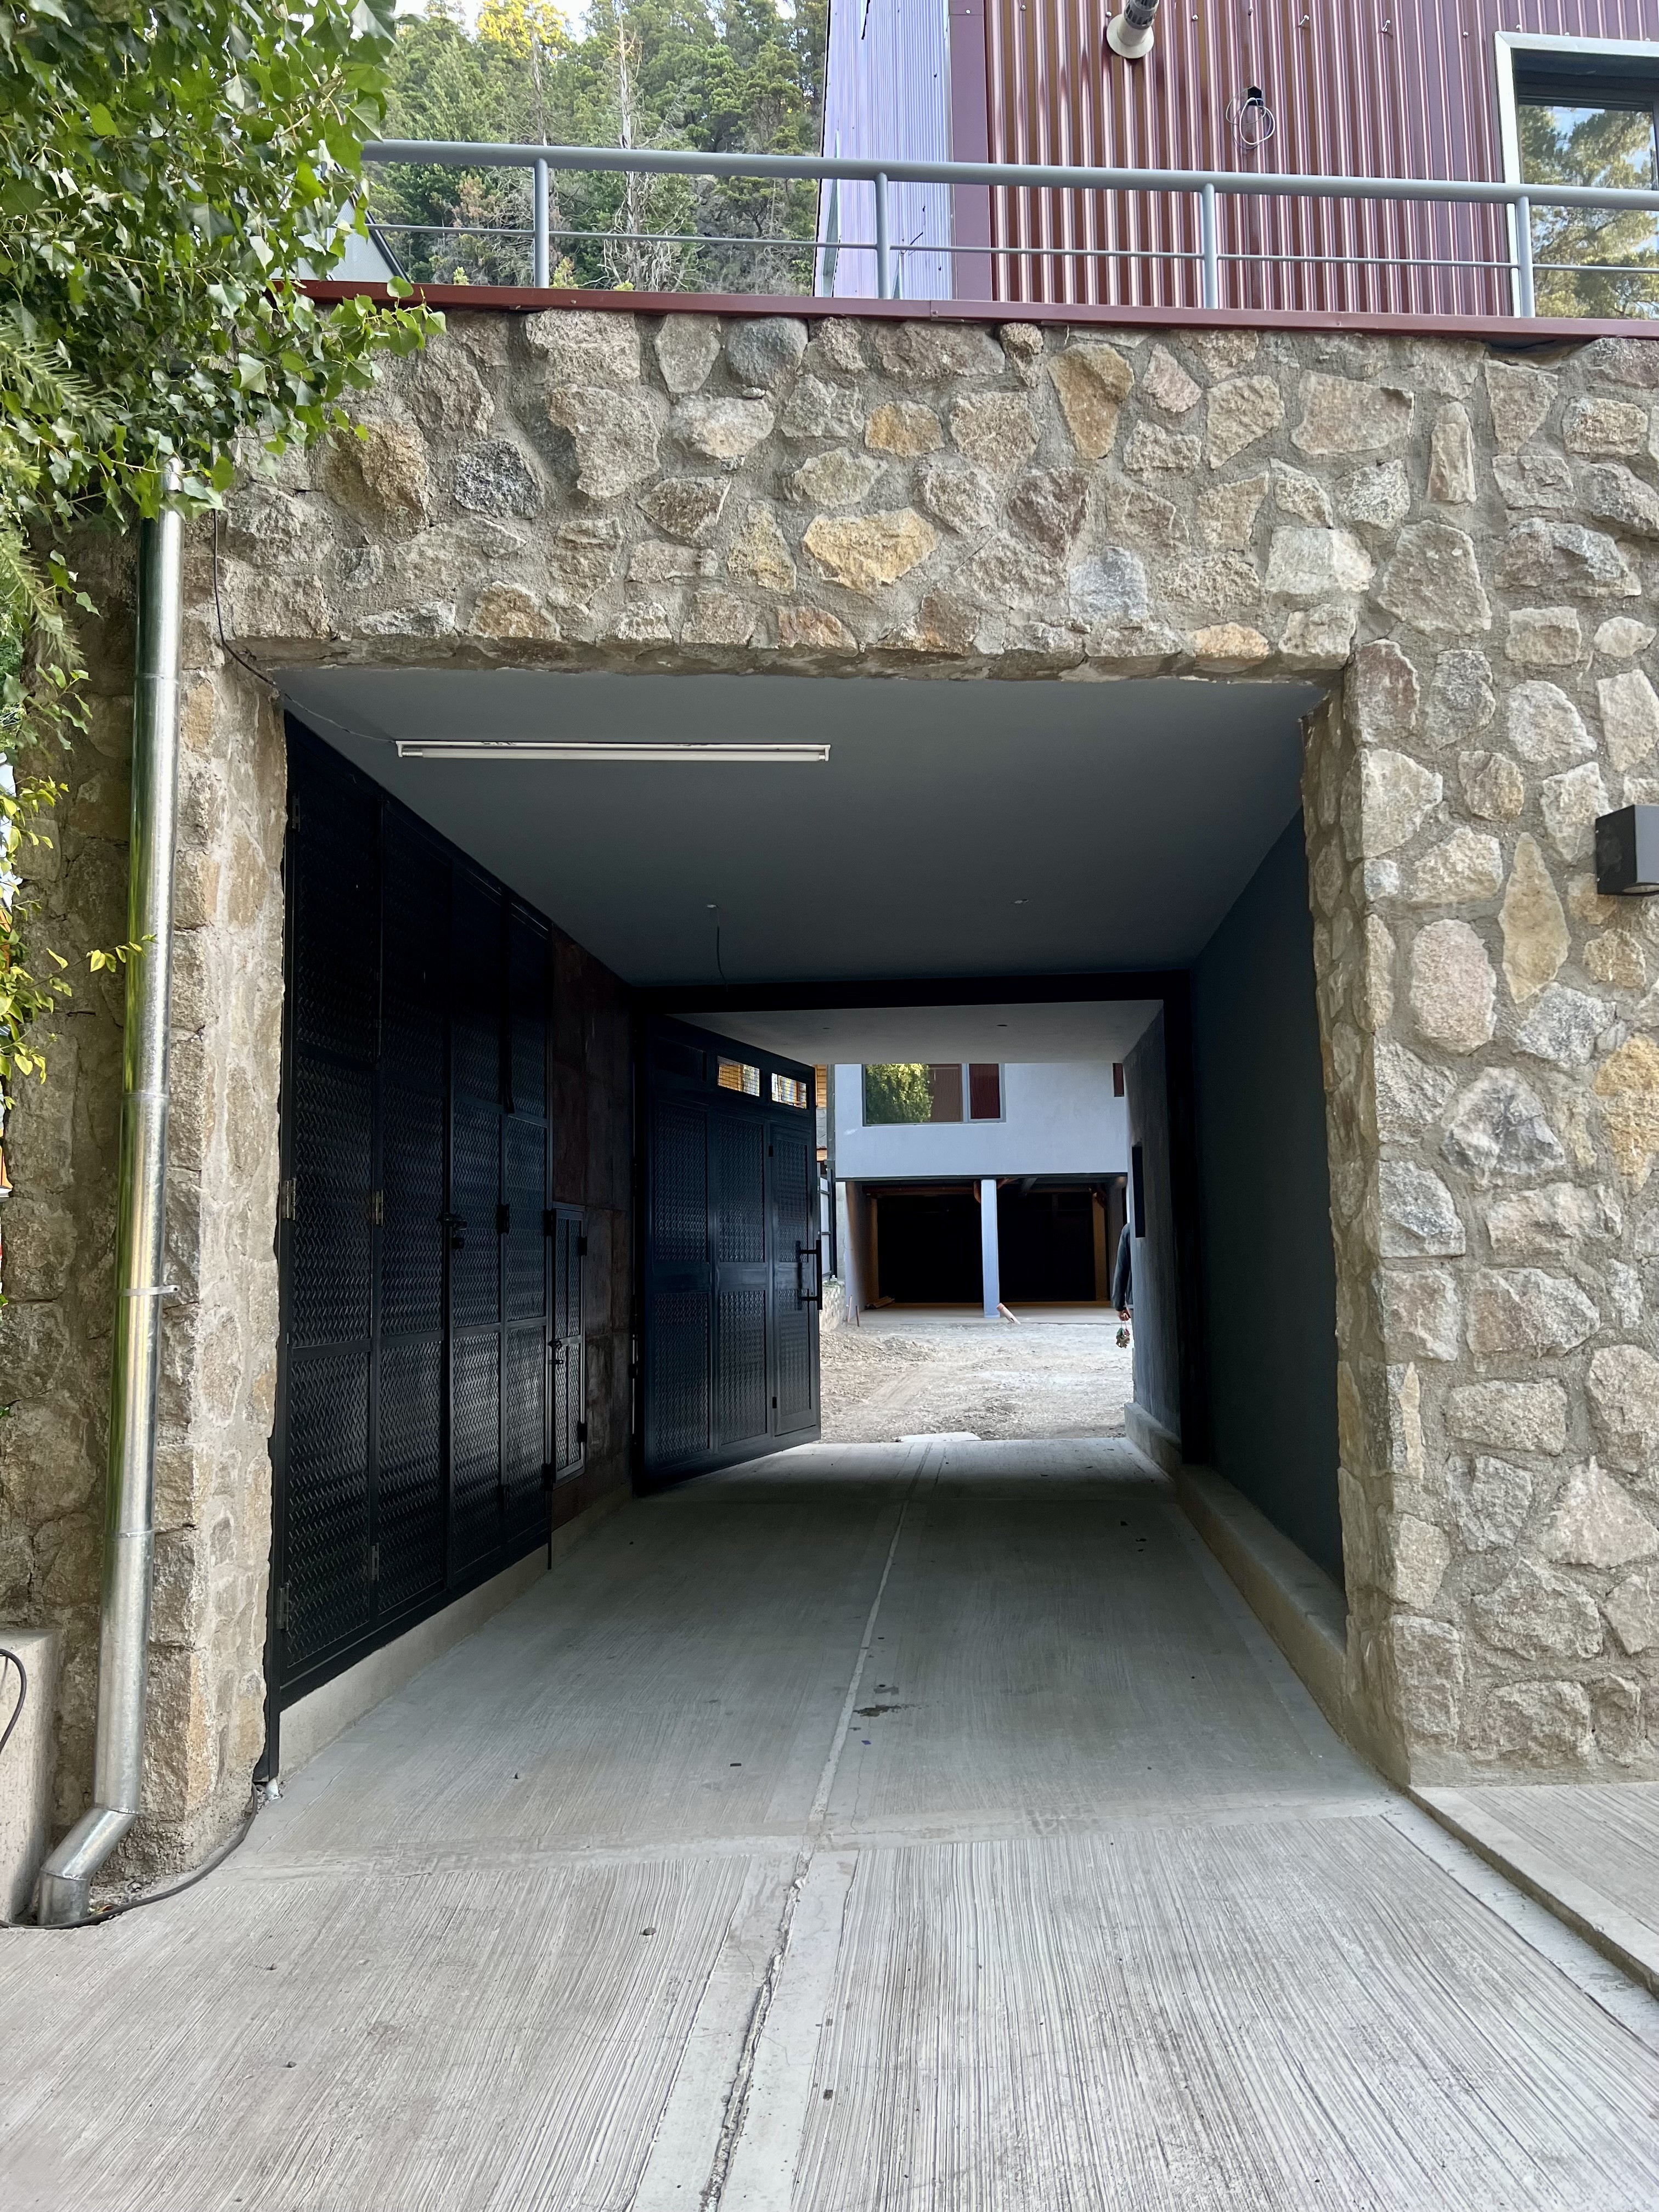 D211 - Departamento a estrenar de 1 dormitorio 55 m2  - Bajada de los Andes - Zona Centro